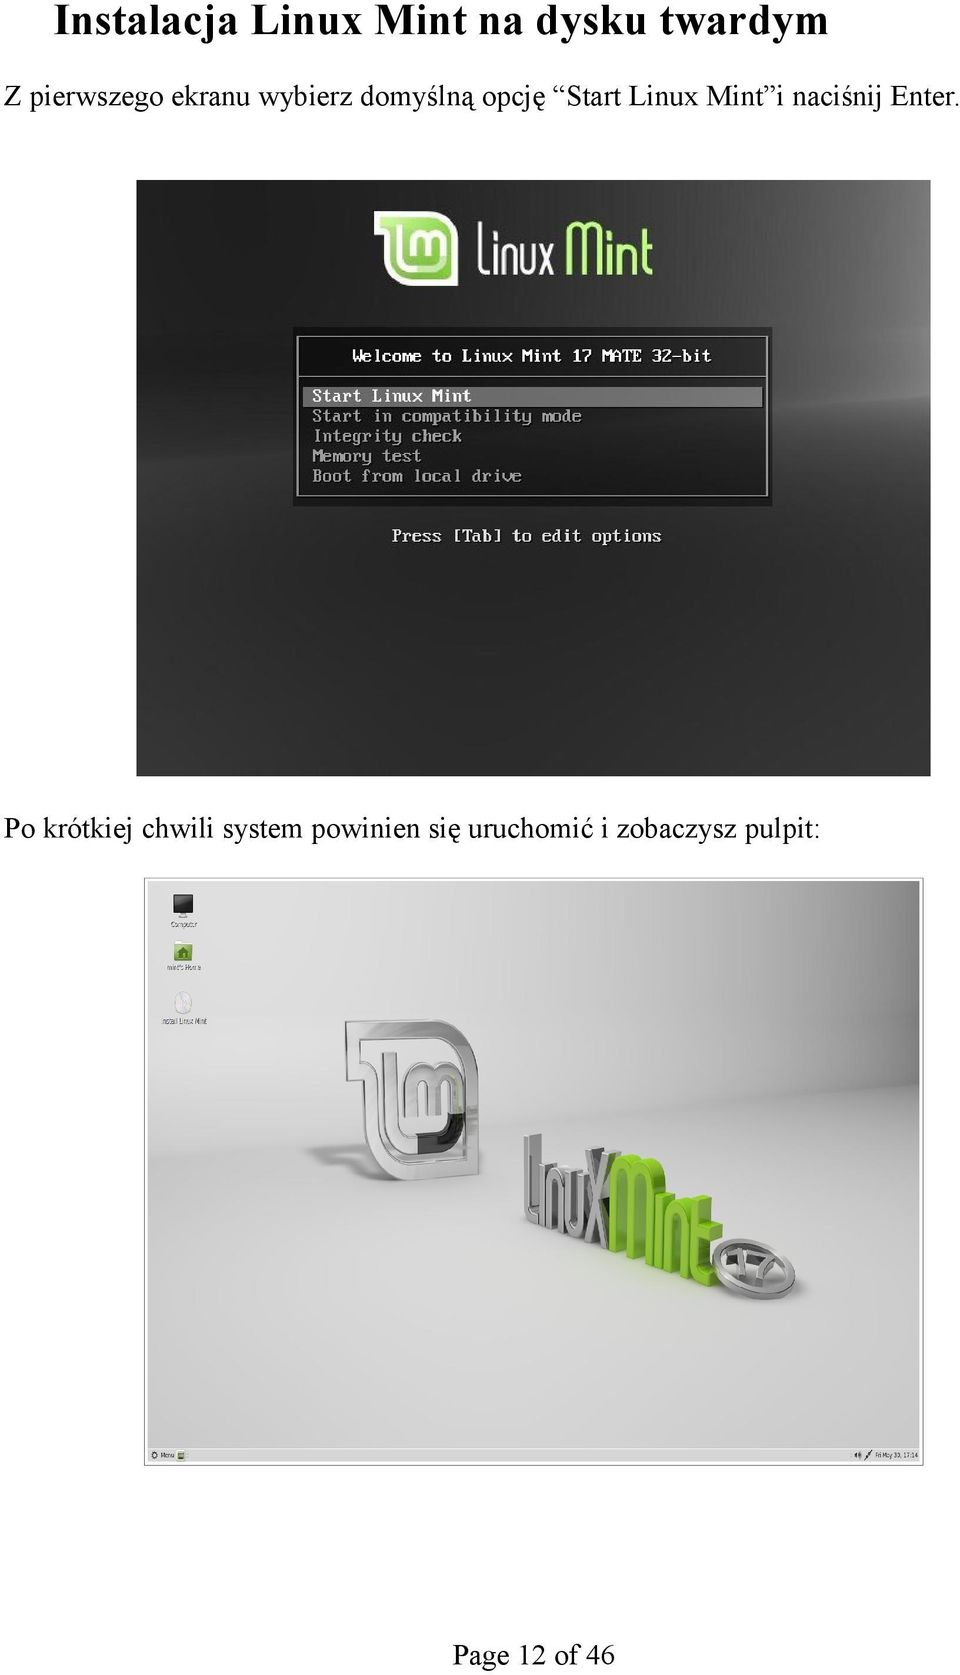 Linux Mint i naciśnij Enter.